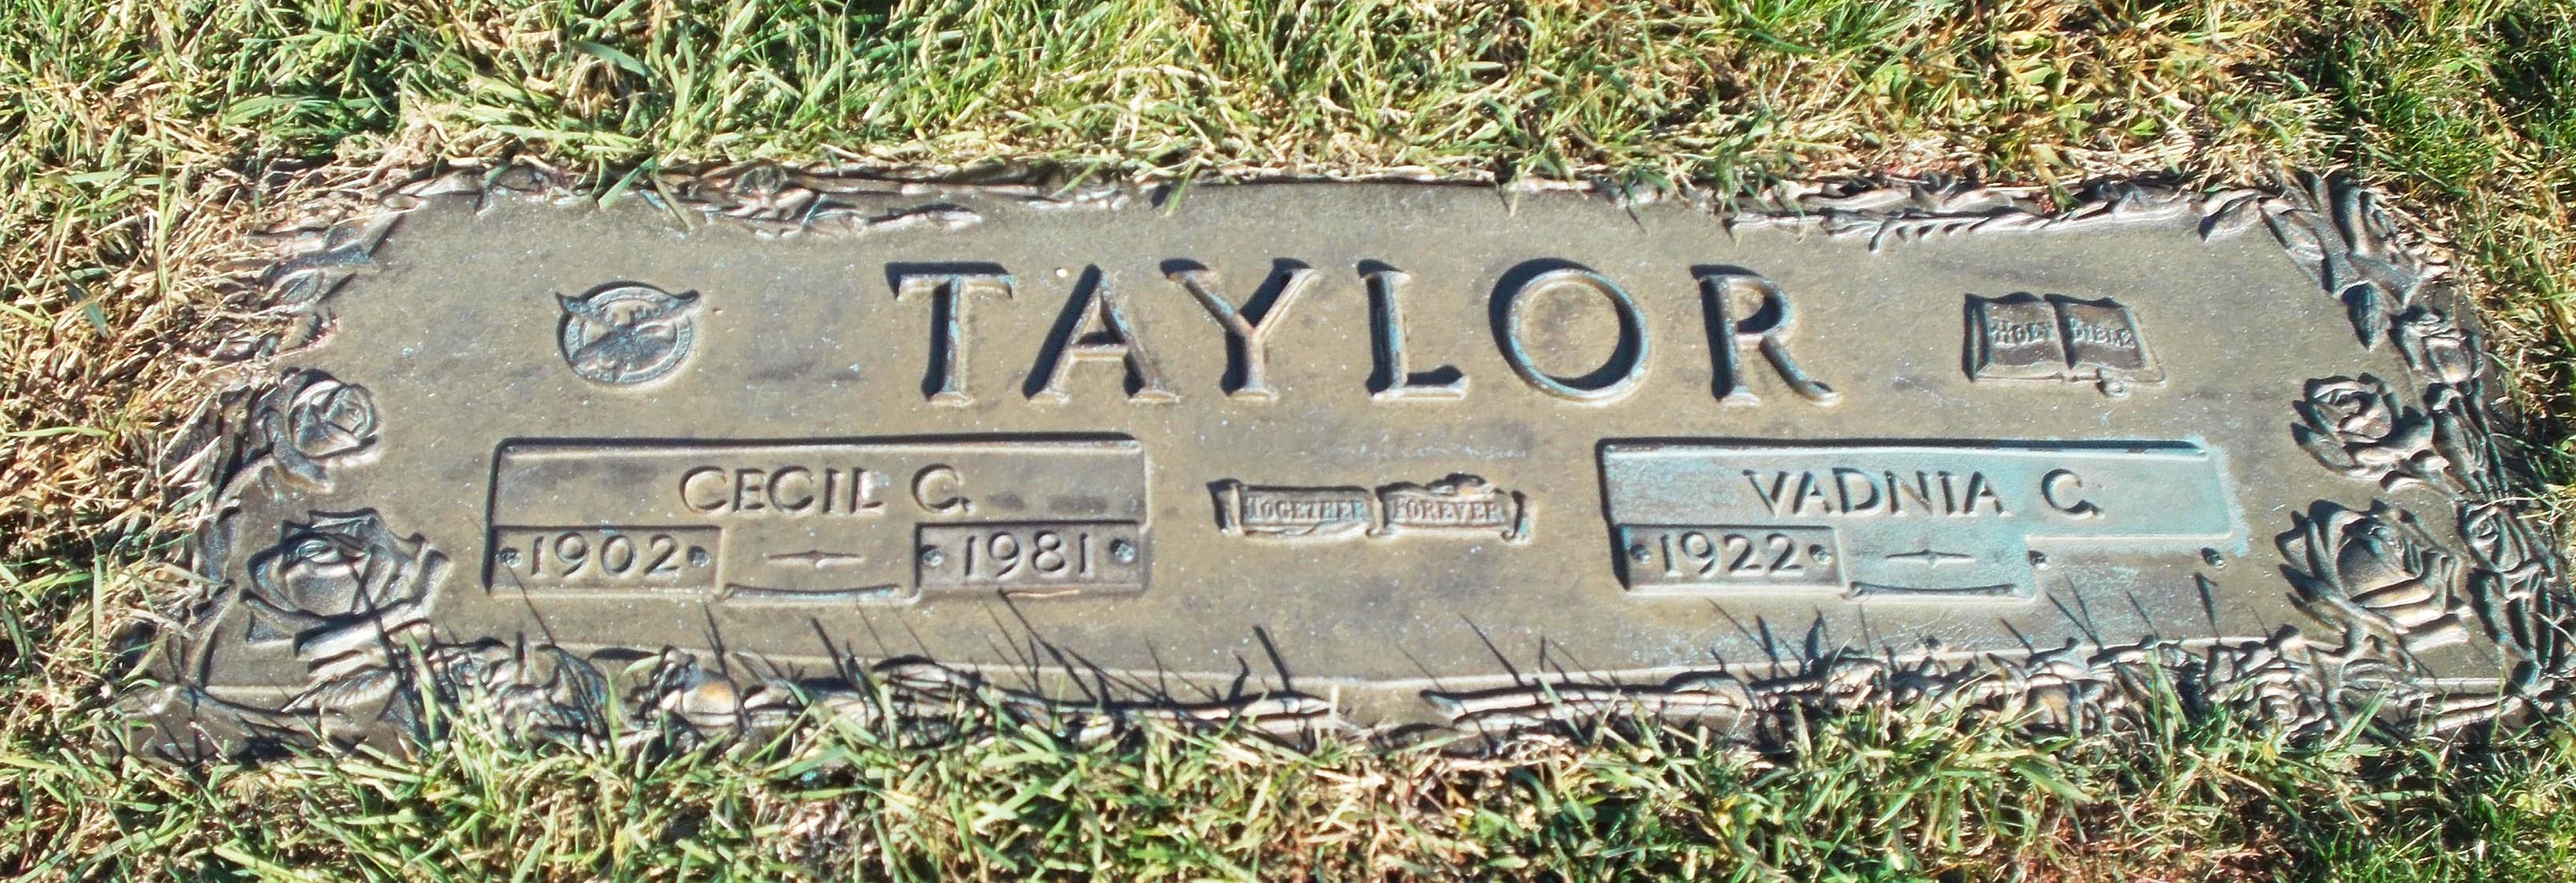 Cecil C Taylor